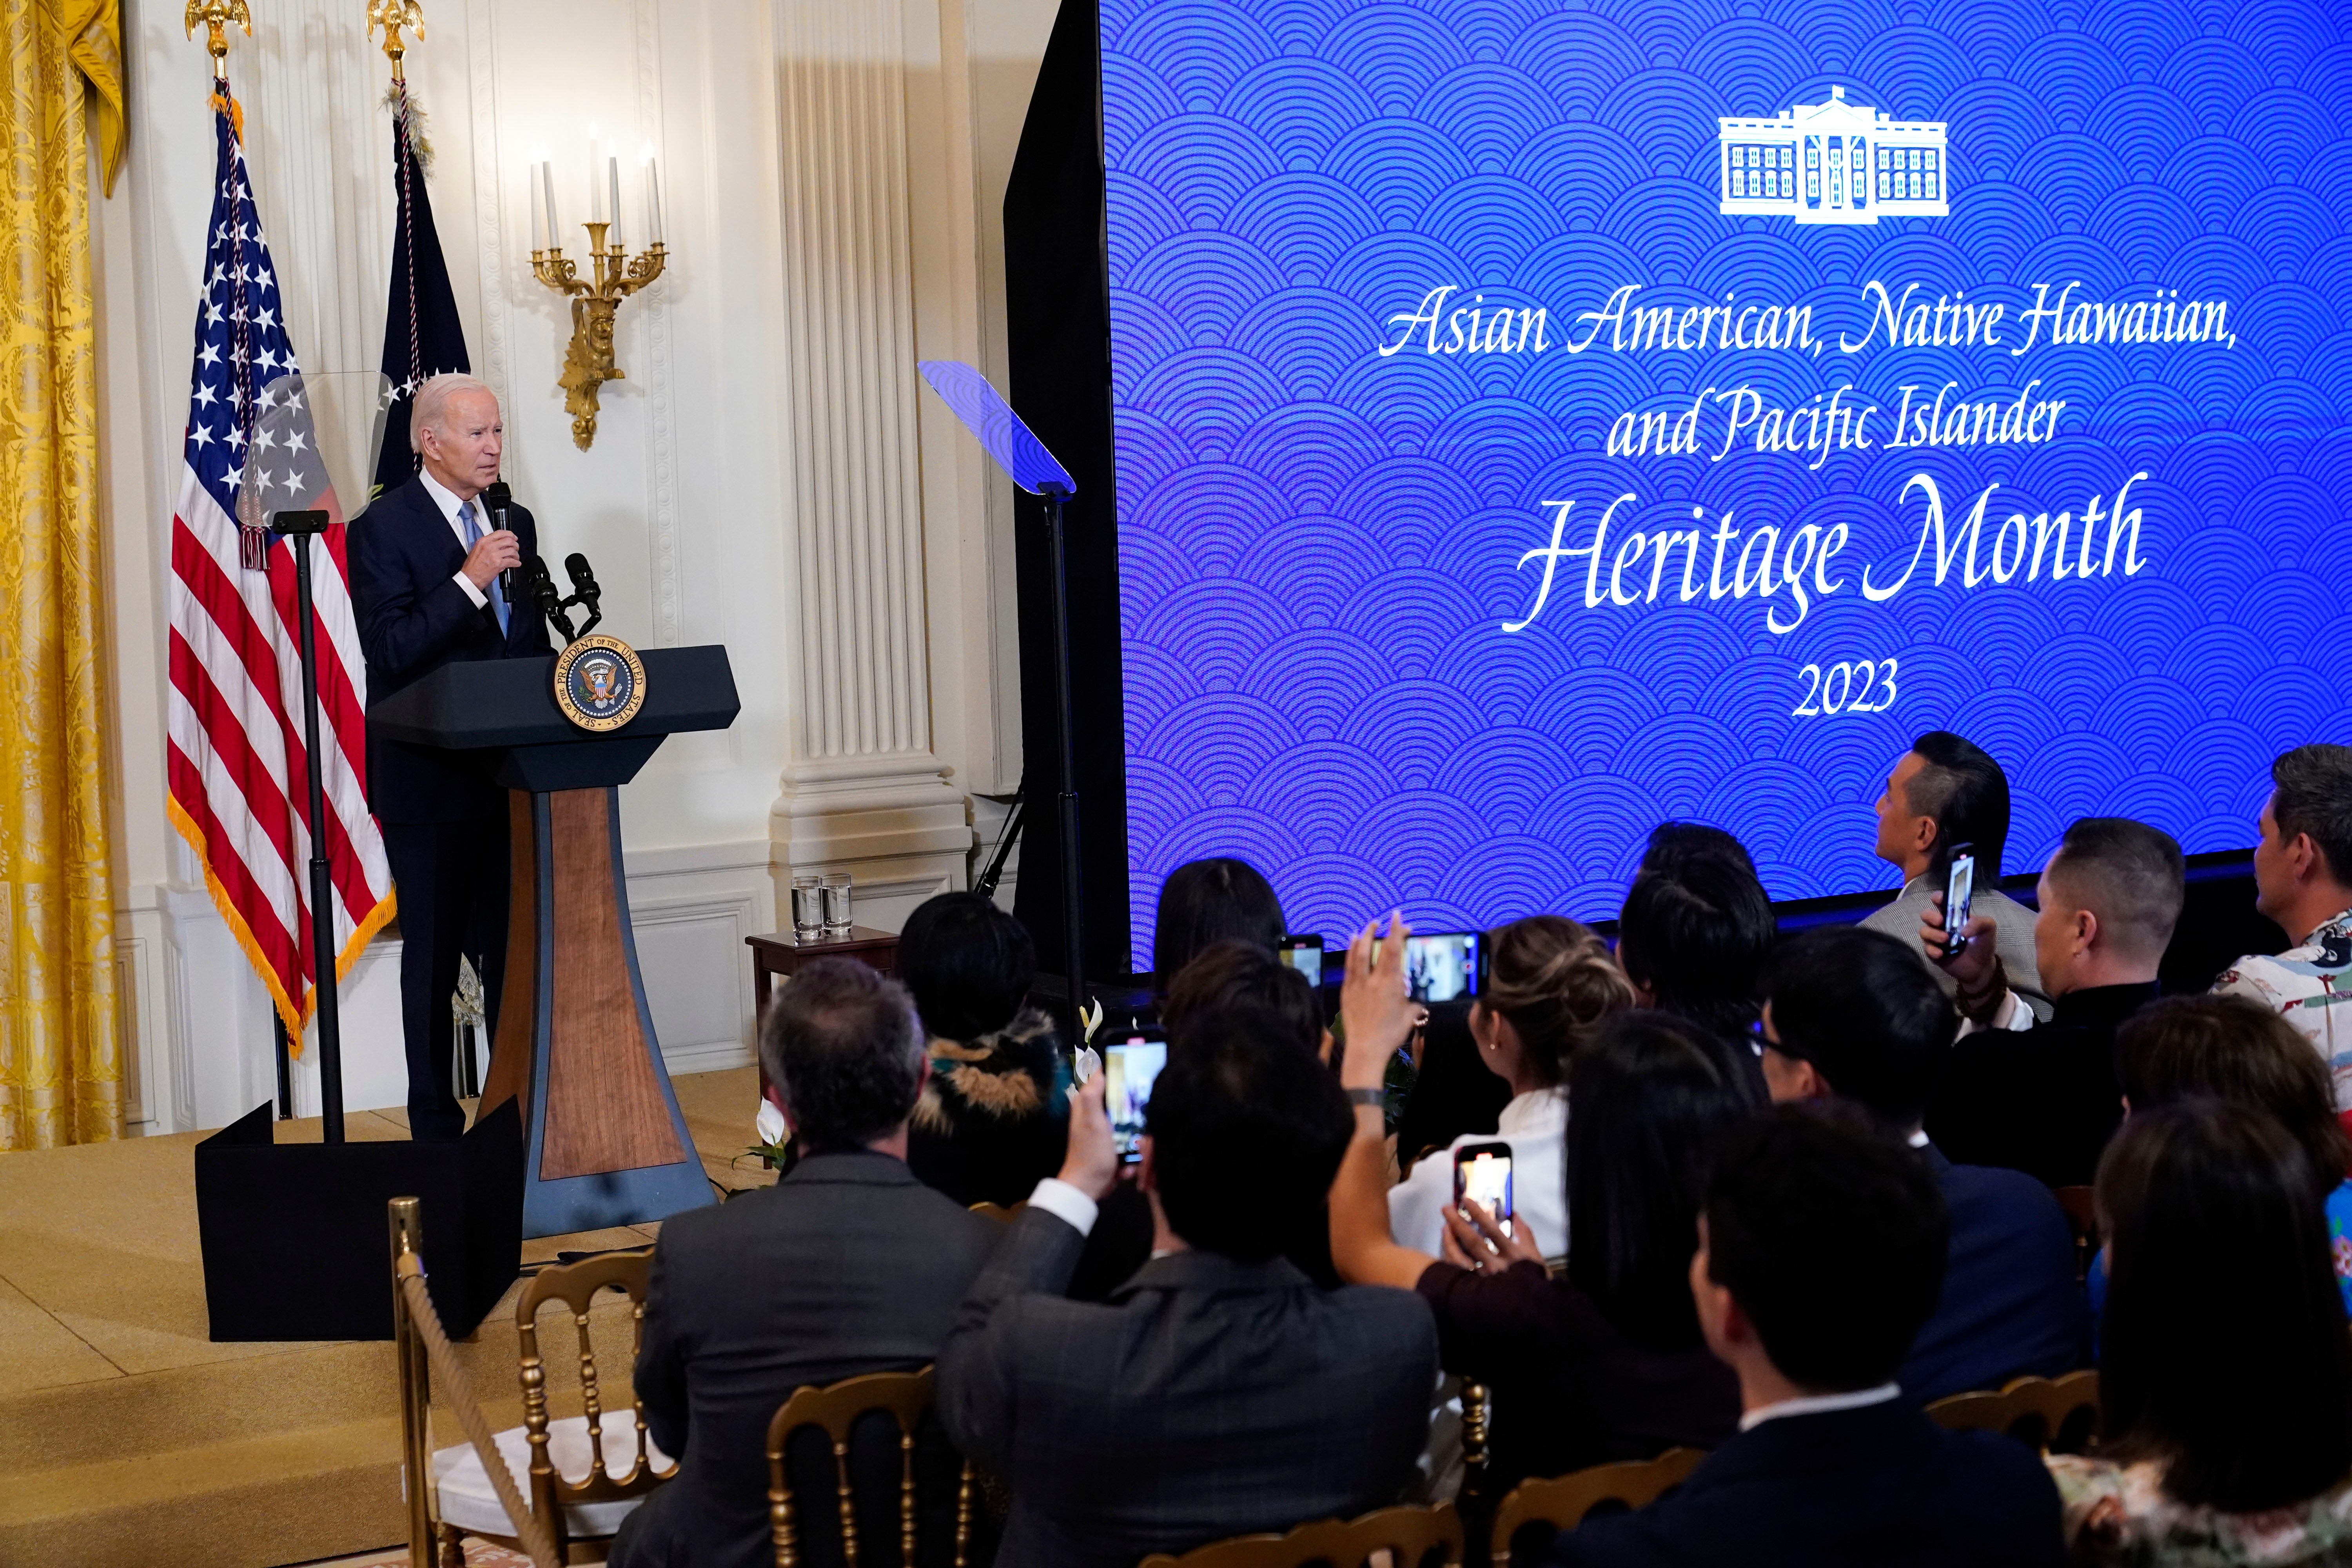 El presidente Joe Biden habla antes de una proyección de la serie "American Born Chinese" en la Sala Este de la Casa Blanca en Washington, en celebración del Mes de la Herencia de Asiático, Nativos e Isleños del Pacífico, el 8 de mayo de 2023 en esta foto de archivo